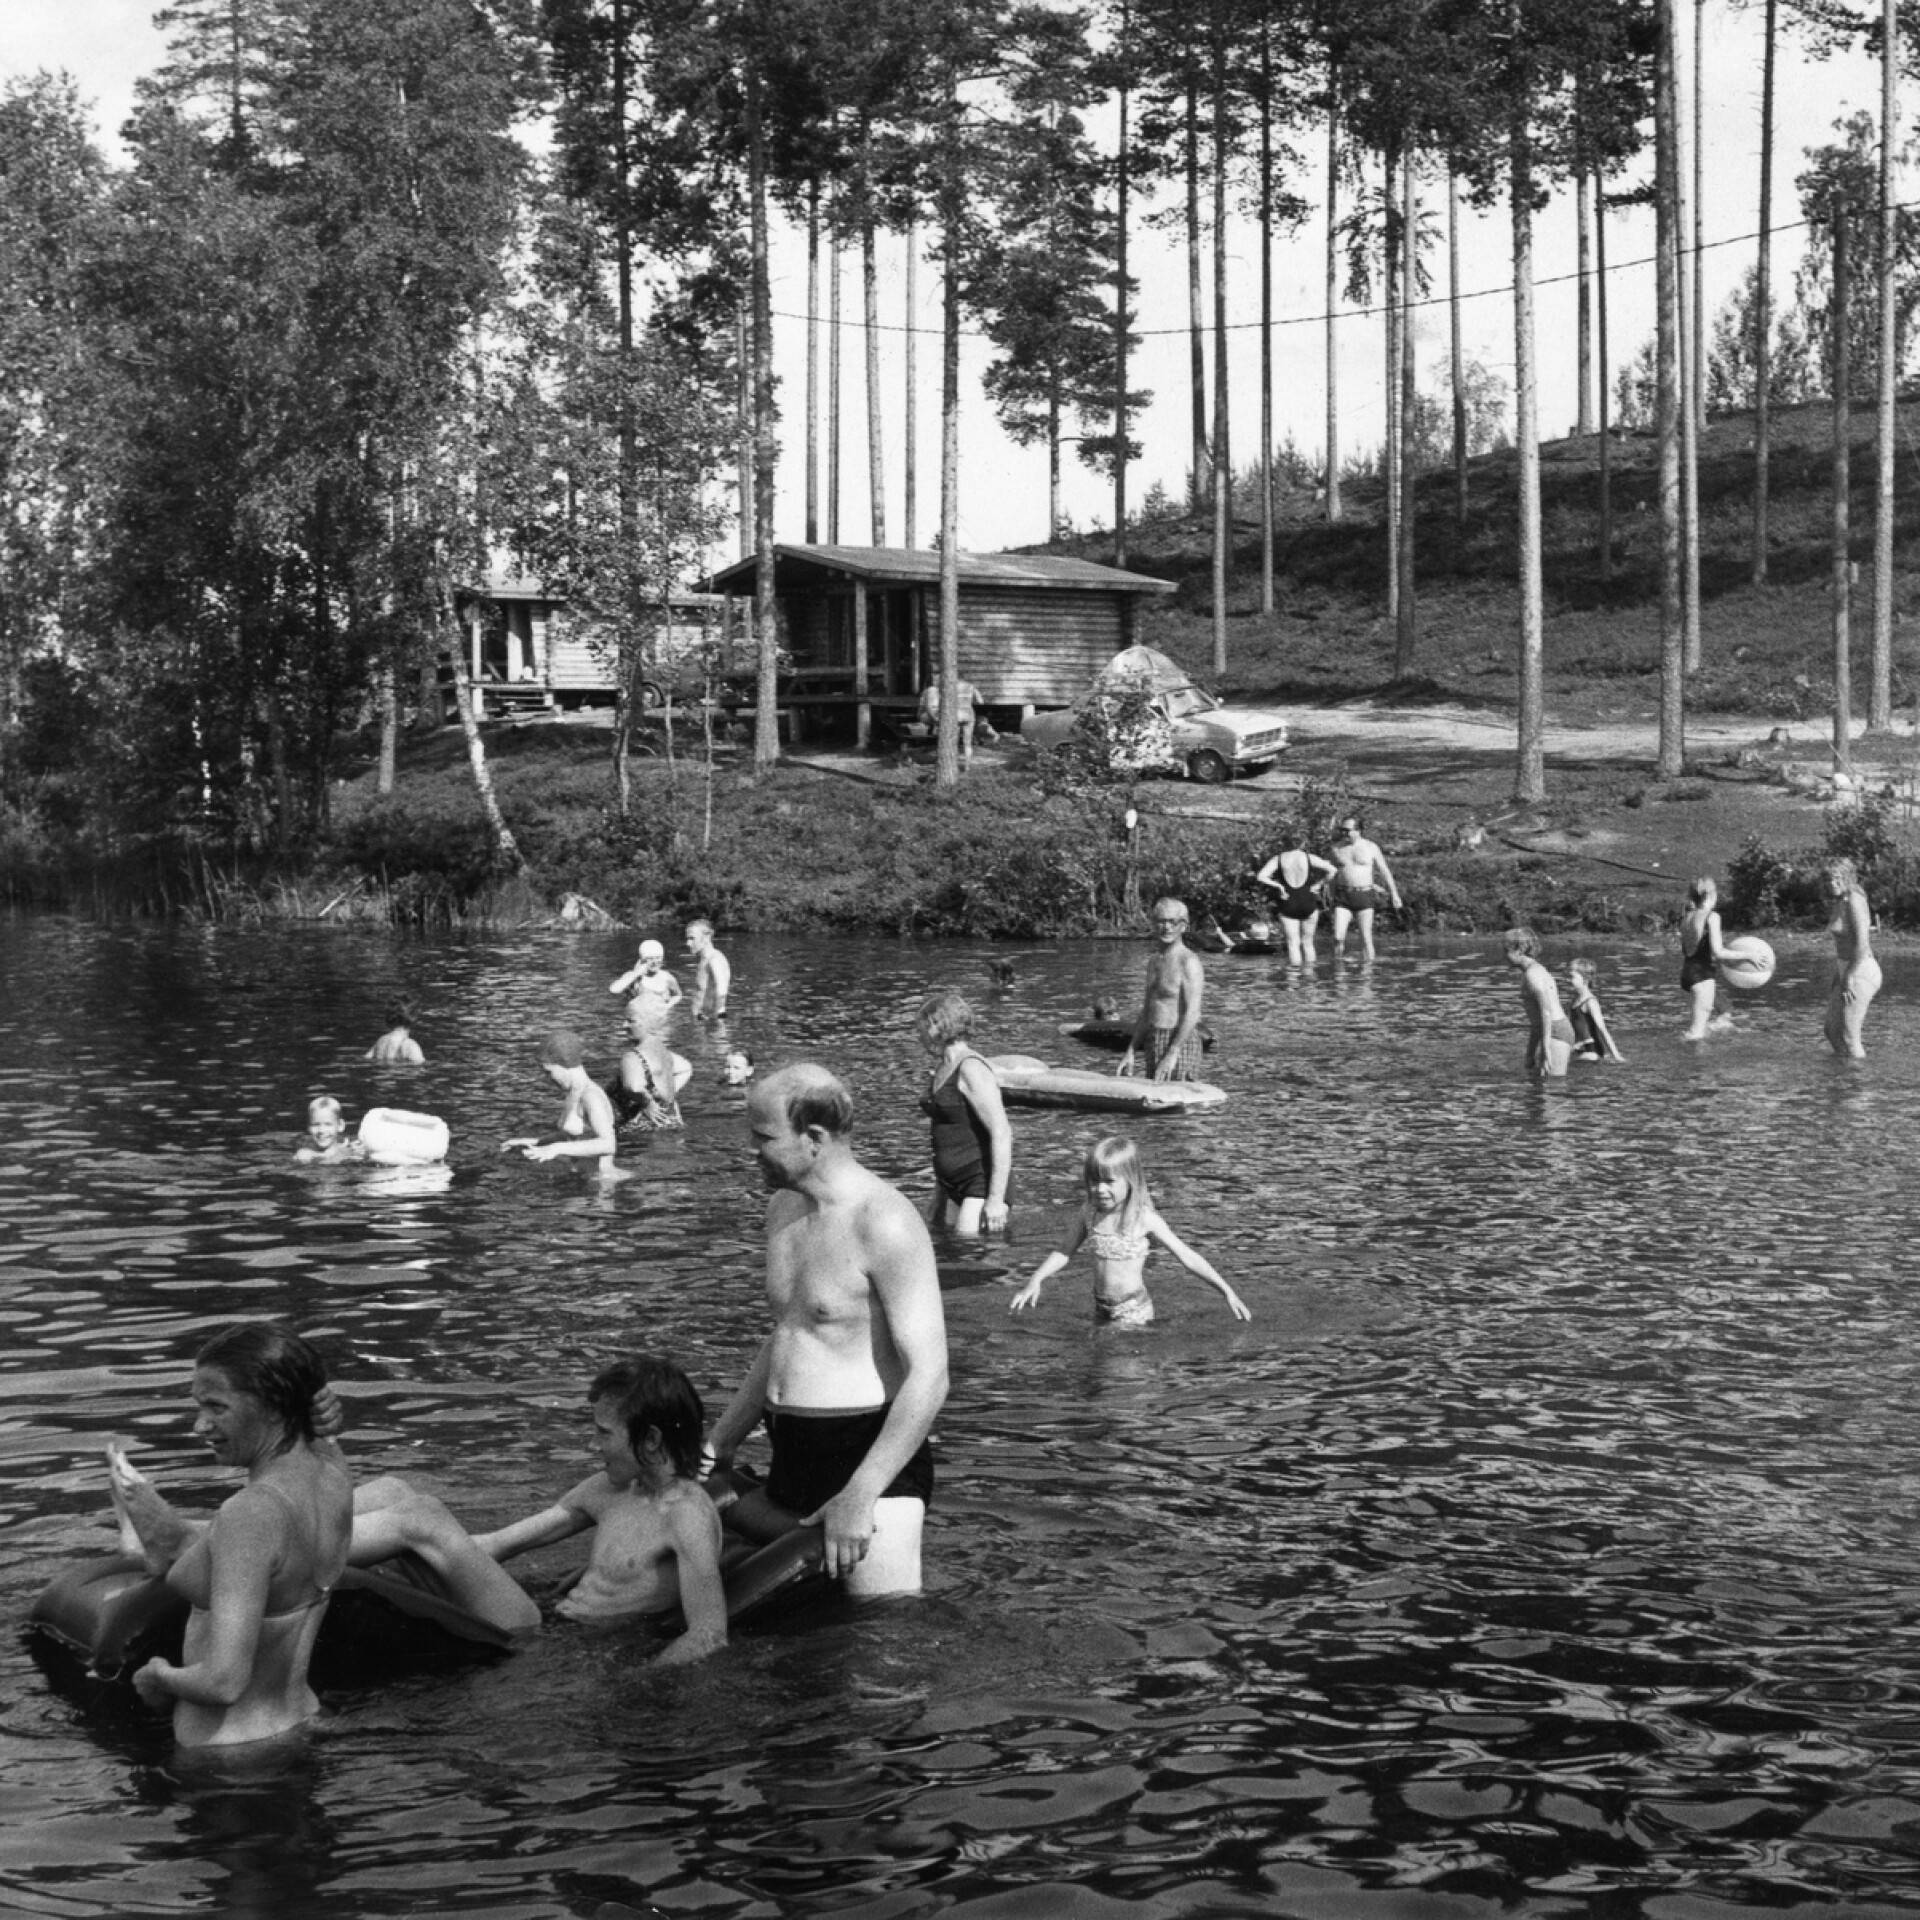 Ilta-Sanomien arkistokuvan kuvatekstissä Kultakiven lomakylän uimavesiä kehuttiin niin puhtaiksi, että niitä voisi jopa juoda. Kultakiven lomakylän alueella rantaa oli vanhan kuvatekstin mukaan lähes kymmenen kilometriä.